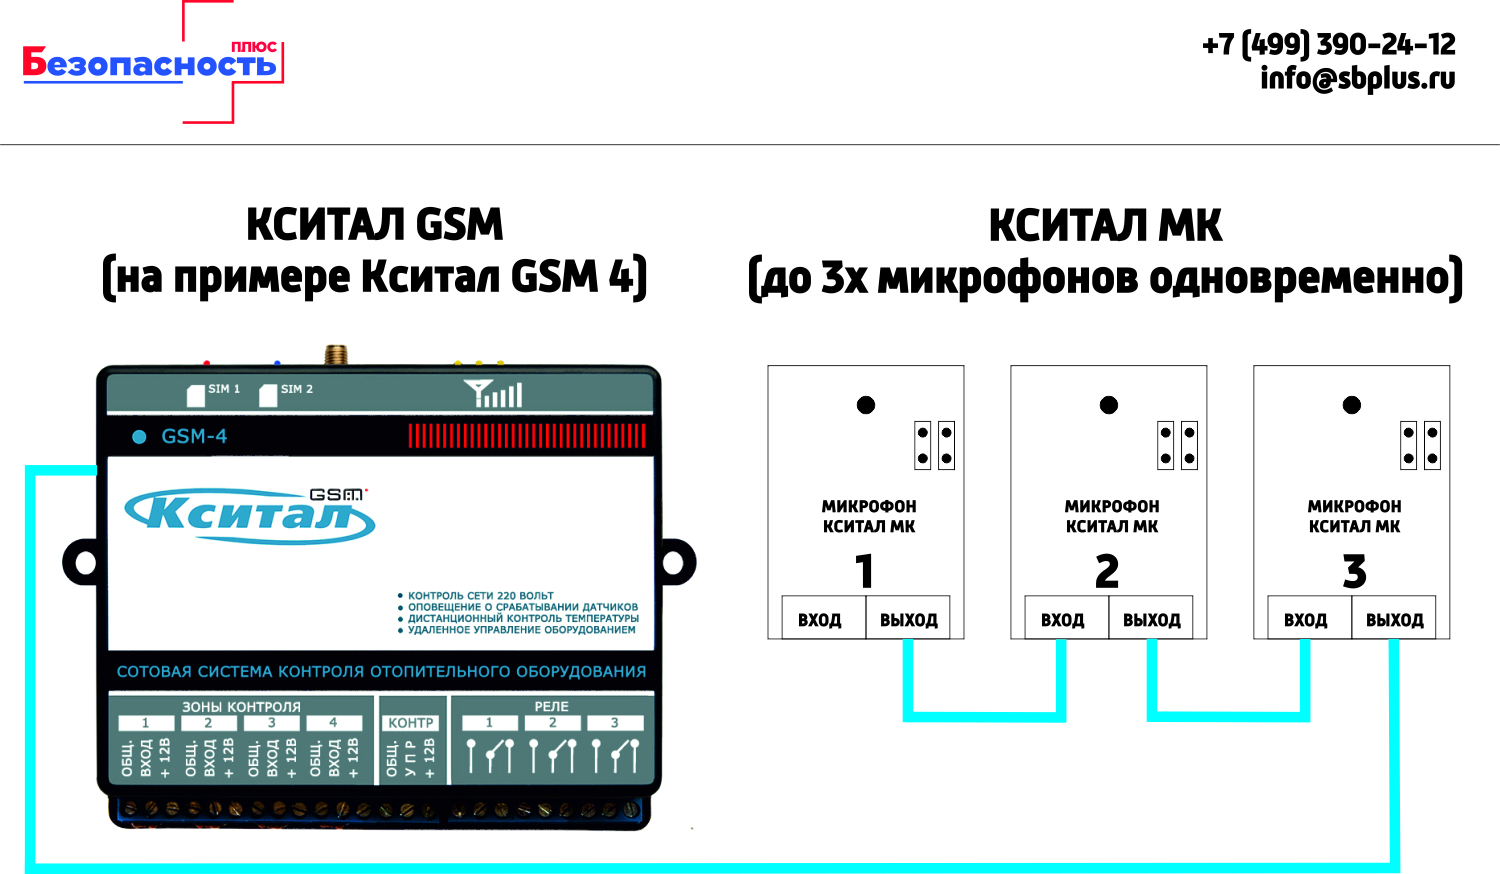 Микрофон Кситал МК схема модключения к Кситал GSM